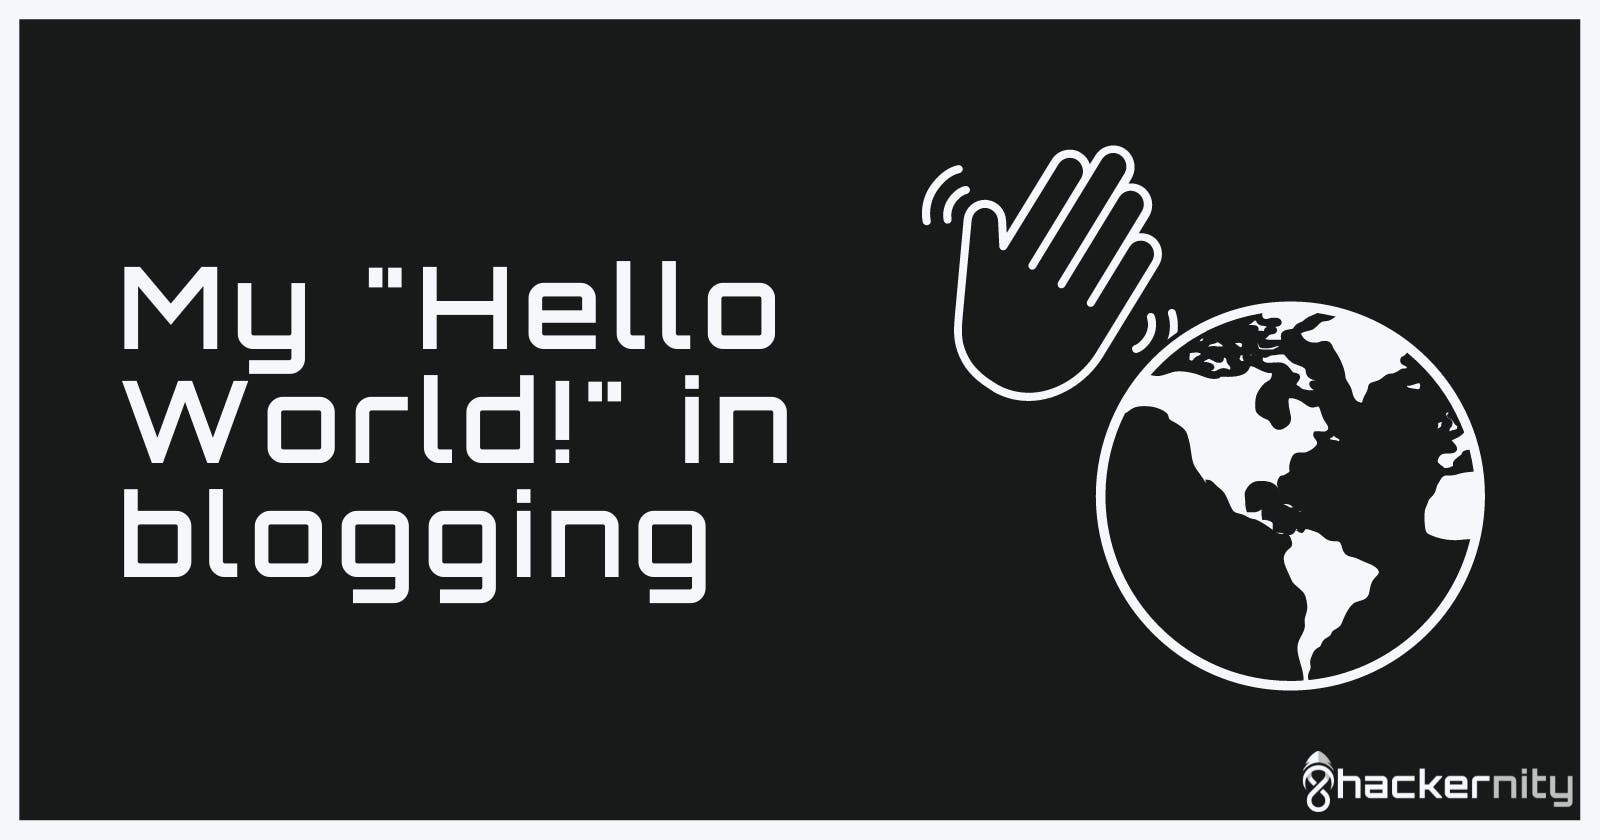 My "Hello World!" in blogging